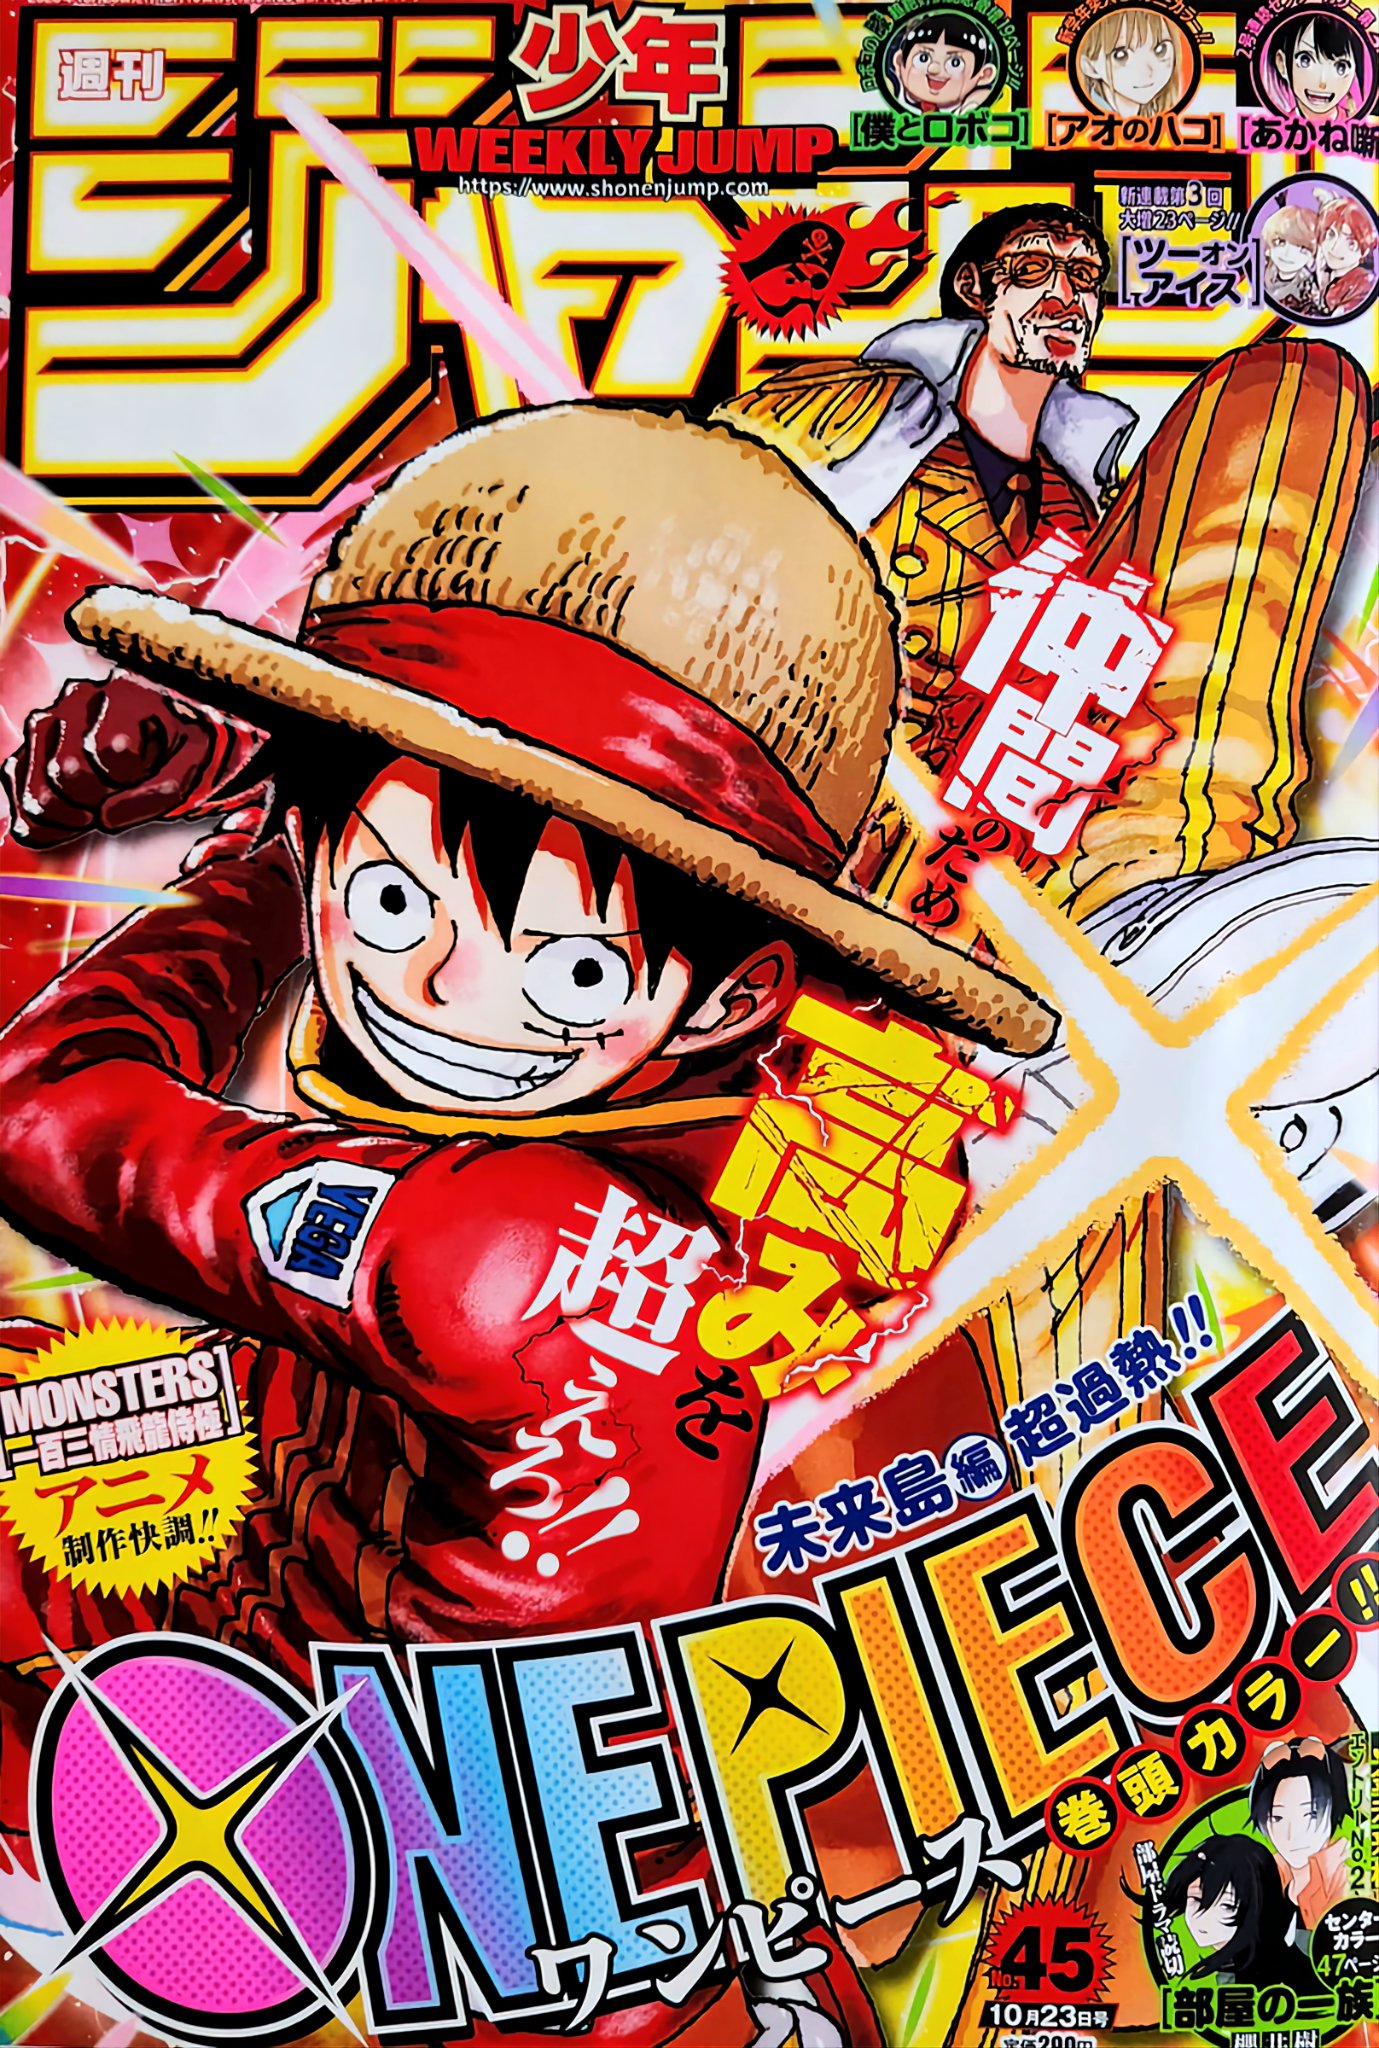 Spoiler] - 1074 Spoiler Metin Ve Resimleri  One Piece Türkiye Fan Sayfası, One  Piece Türkçe Manga, One Piece Bölümler, One Piece Film